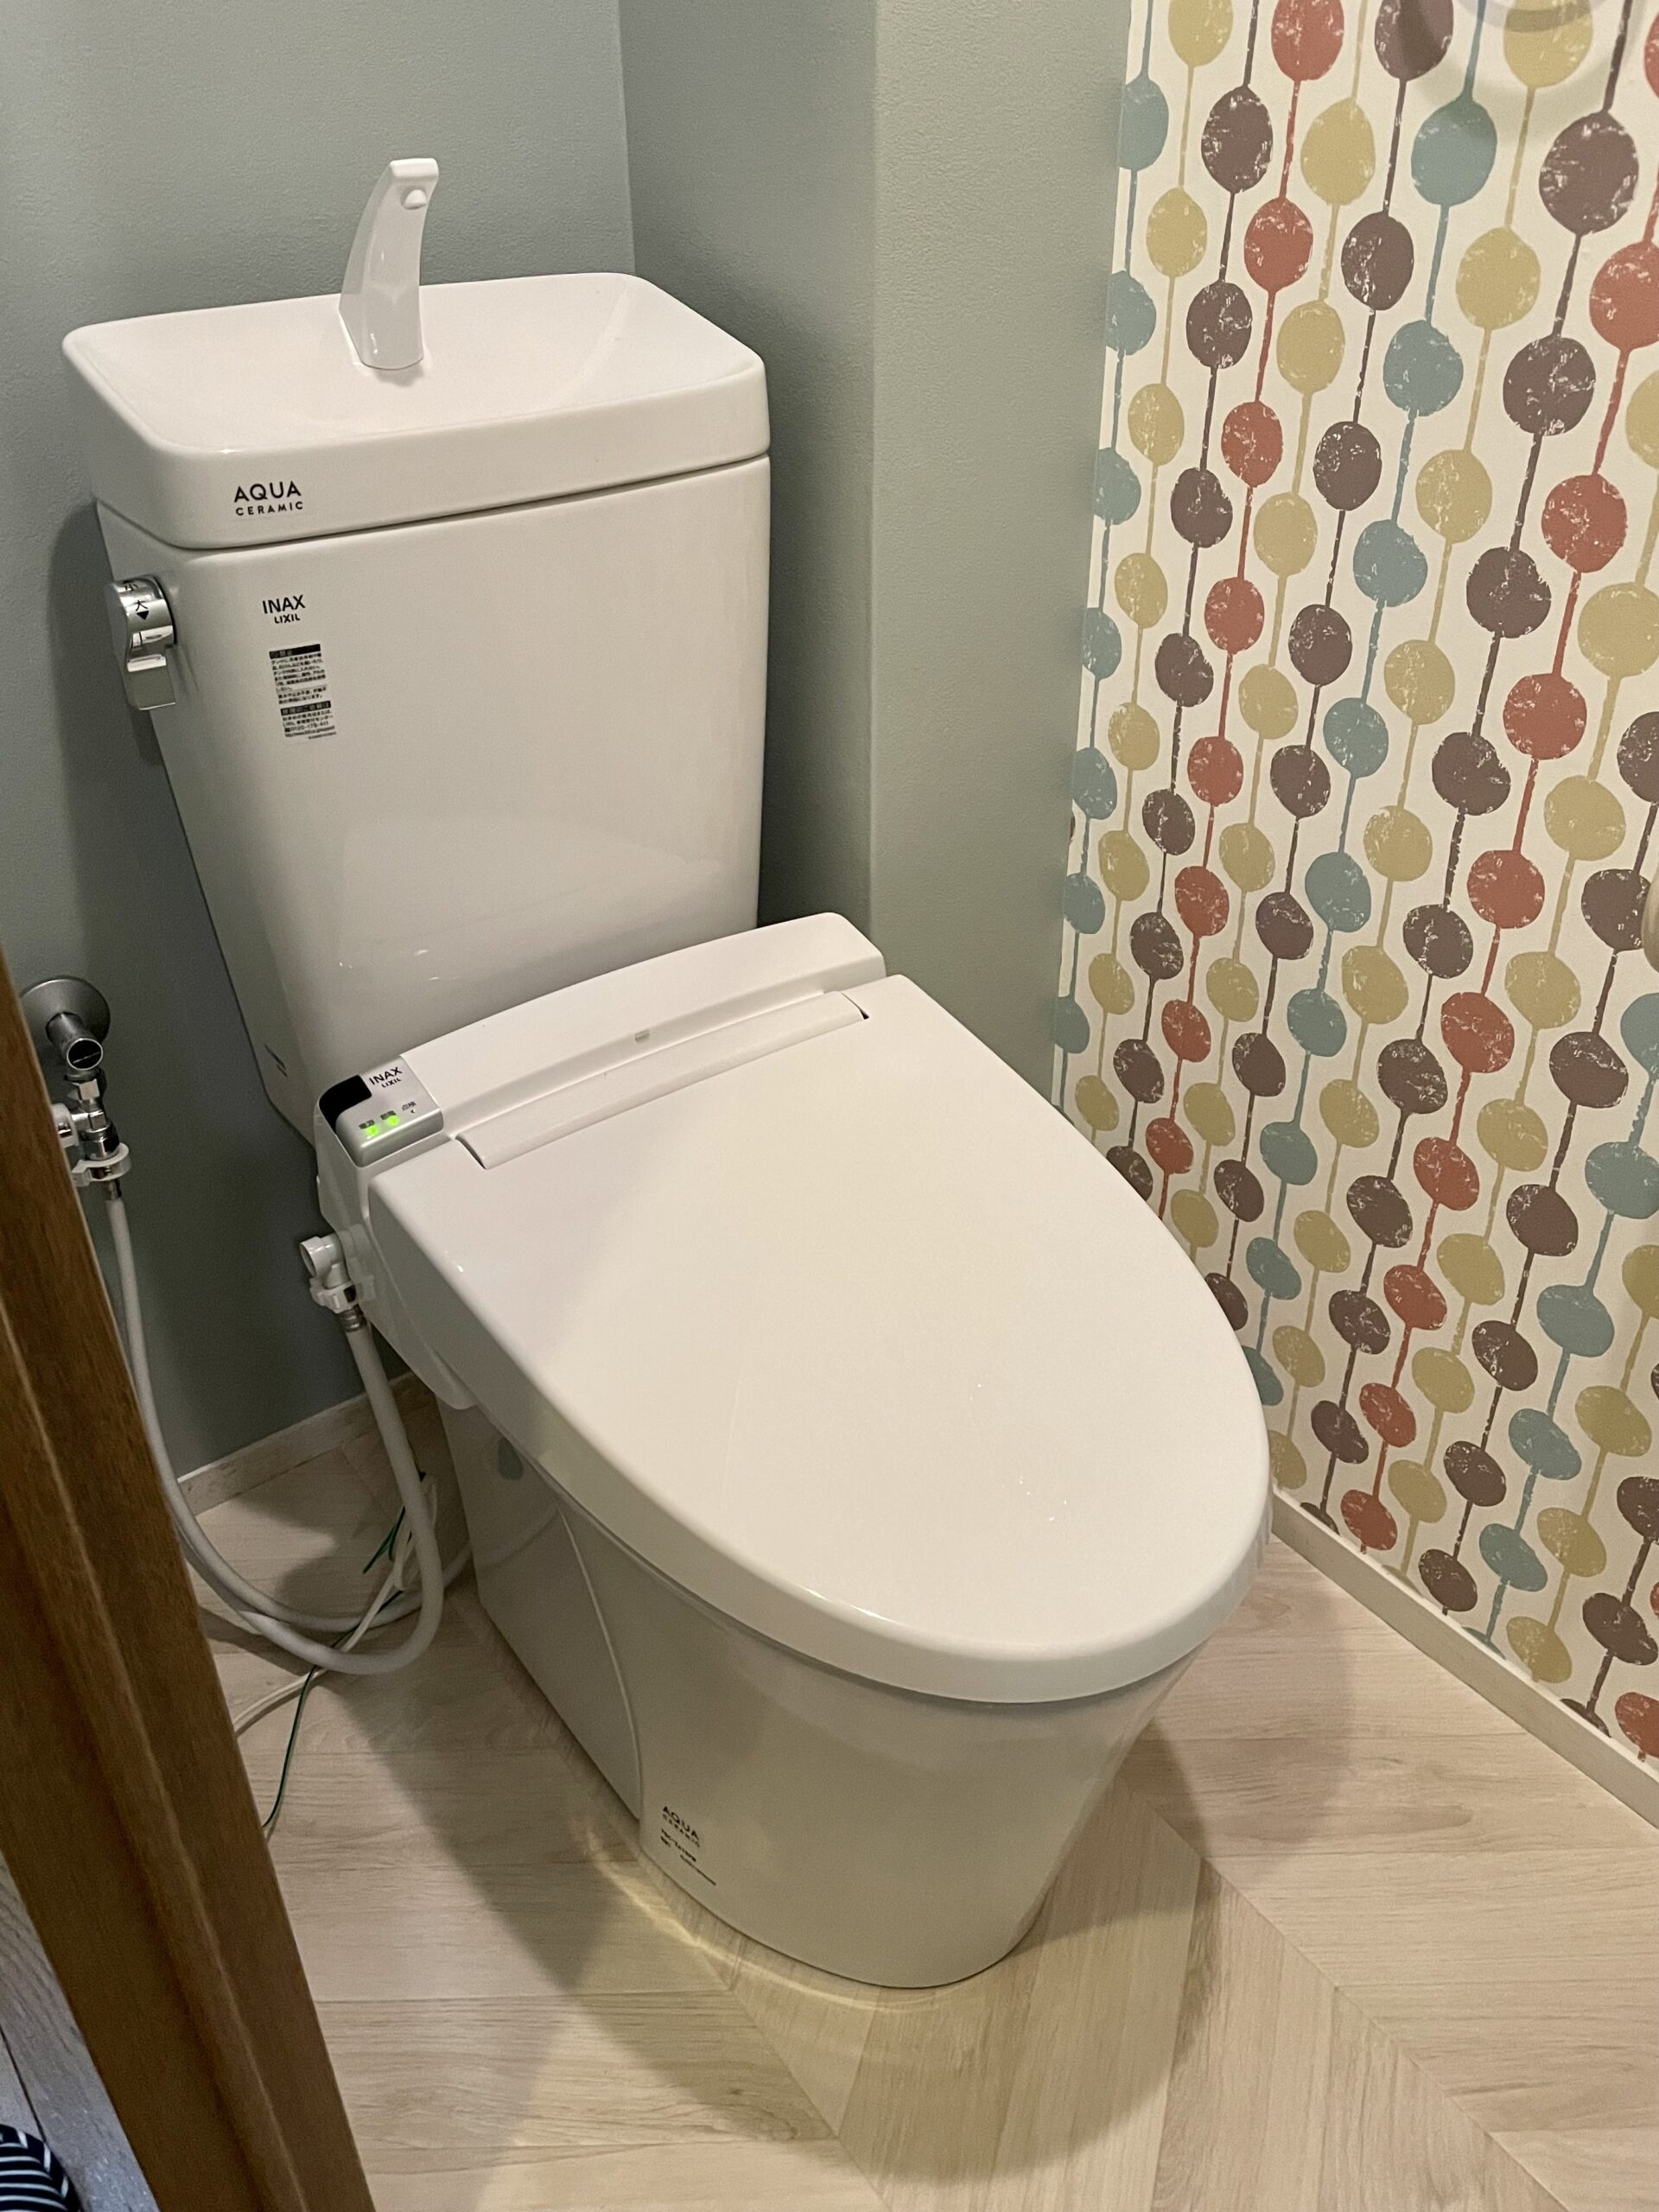 八尾市のマンションでトイレの取替工事をさせて頂きました。